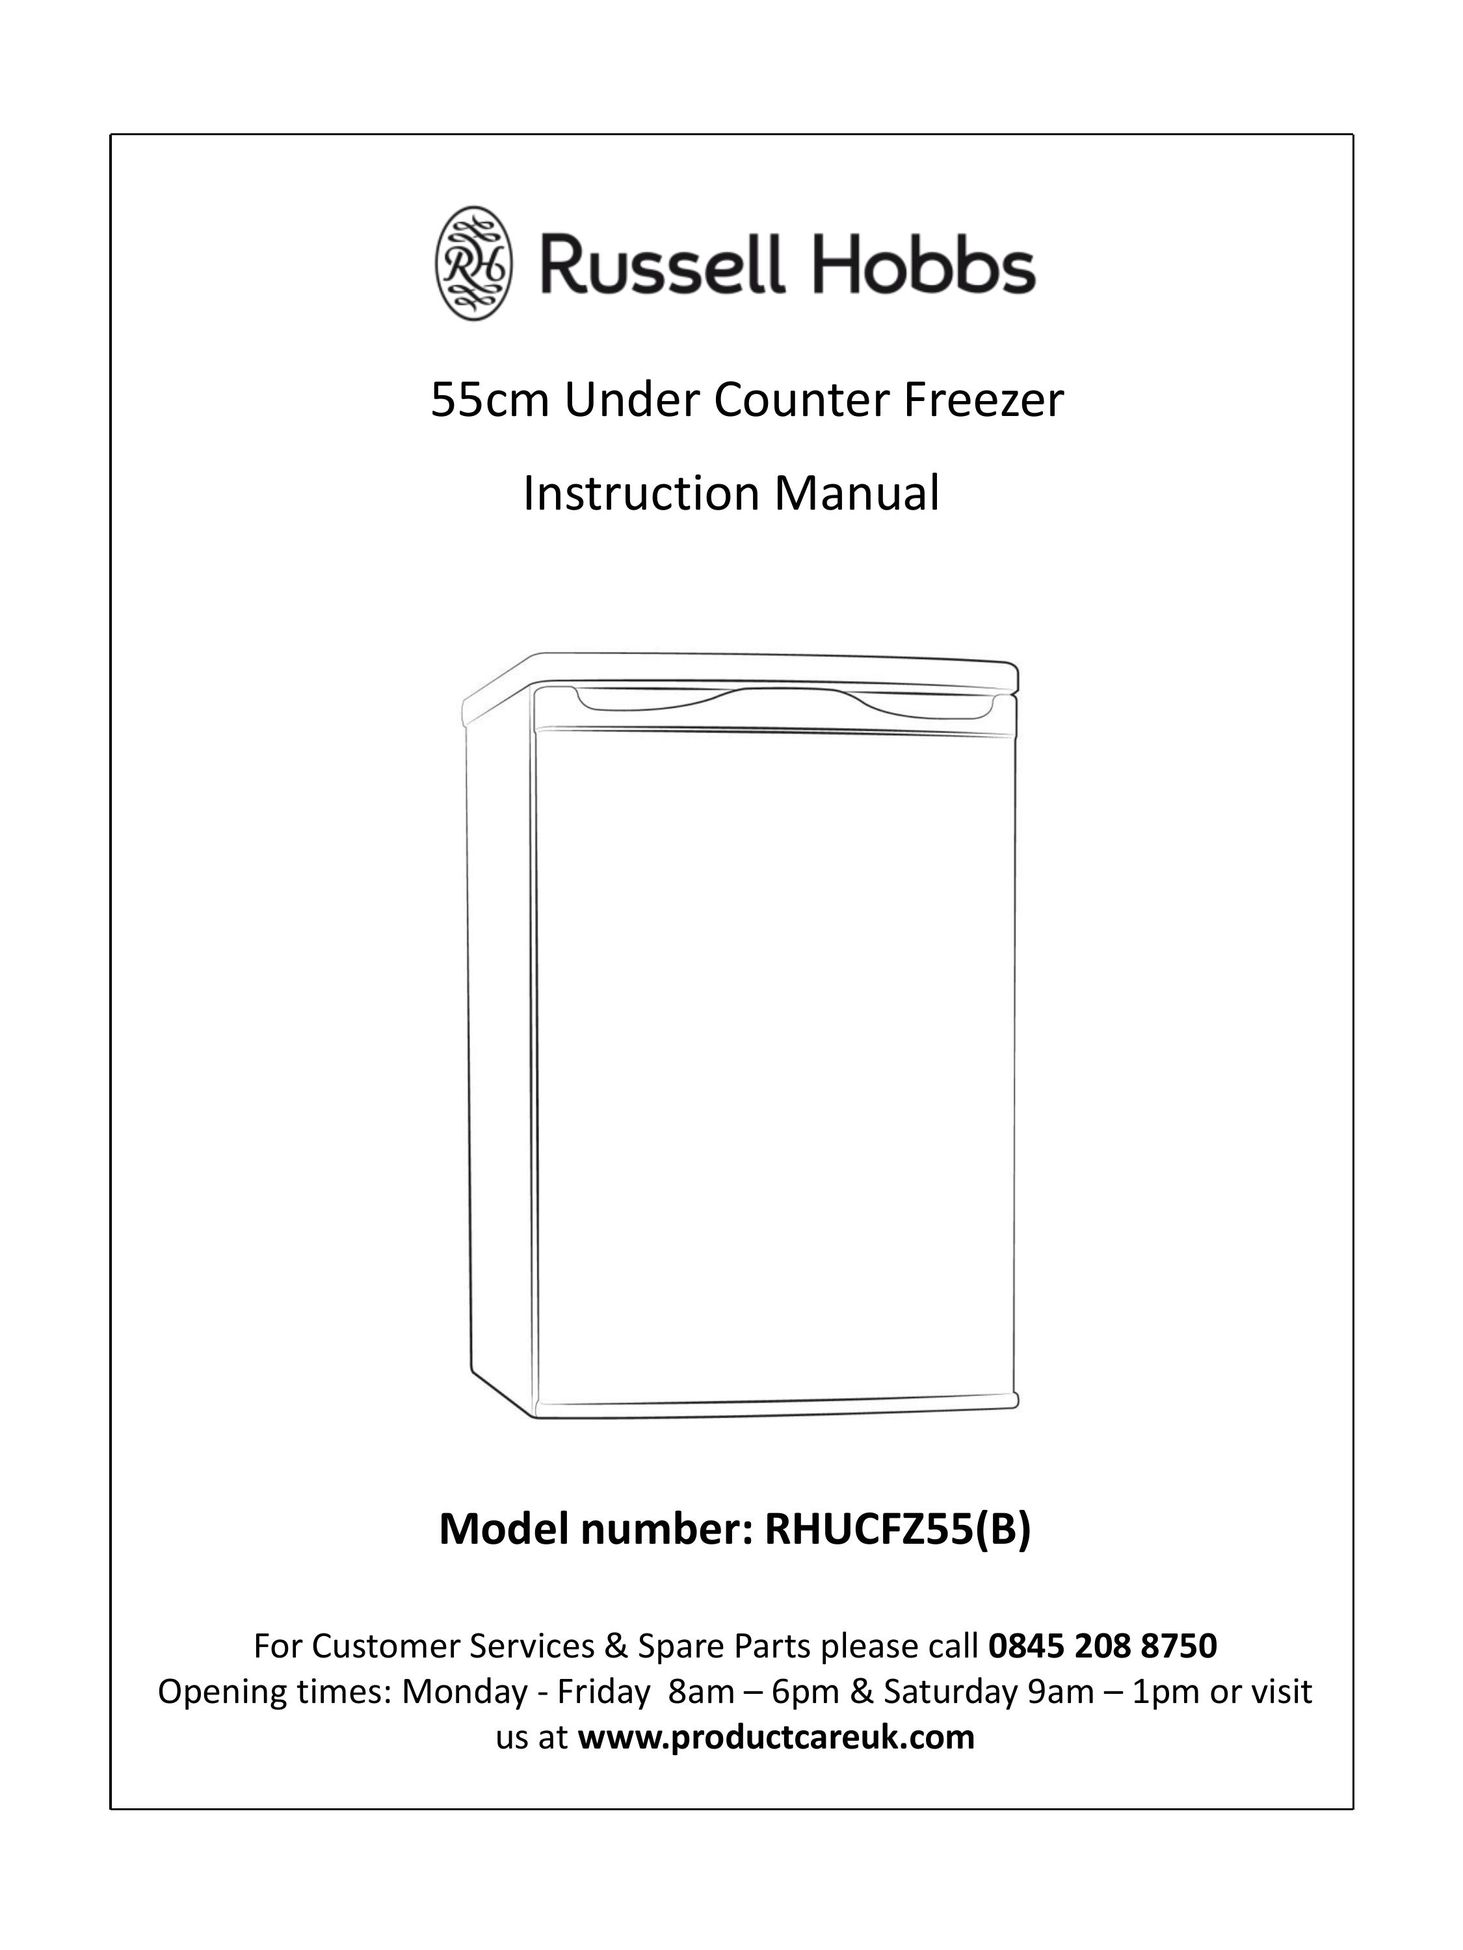 Russell Hobbs RHUCFZ55(B) Freezer User Manual